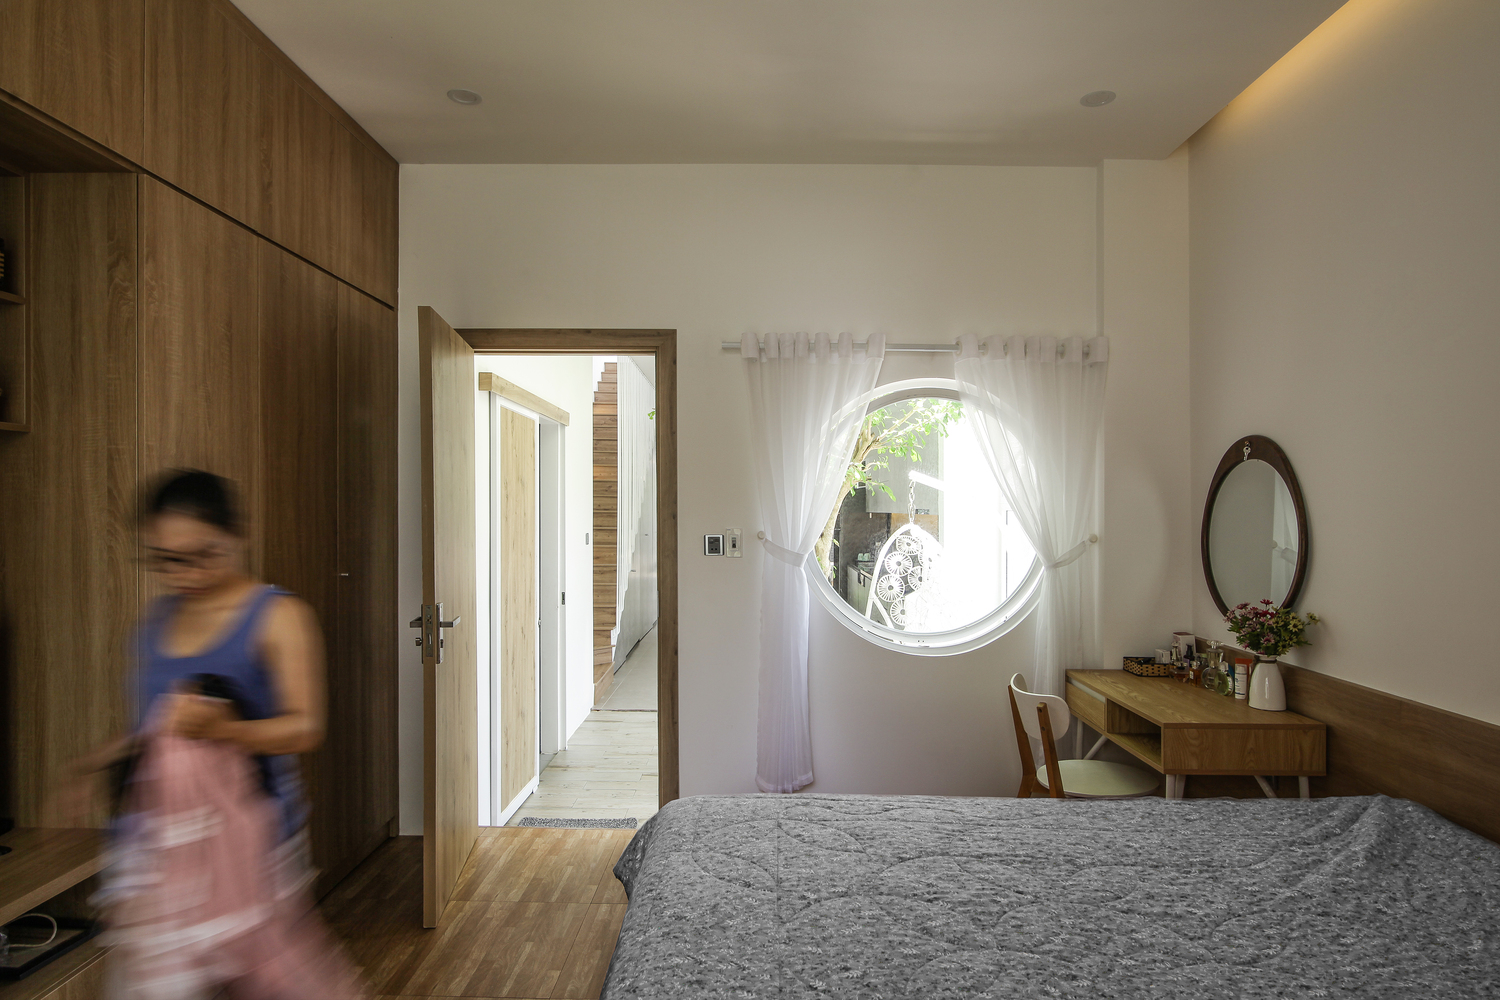 Cửa sổ phòng ngủ hình tròn cho phép chủ nhân có thể ngắm nhìn không gian bên ngoài xích đu và phòng bếp, đồng thời tạo sự liền mạch giữa các khu vực chức năng riêng biệt.